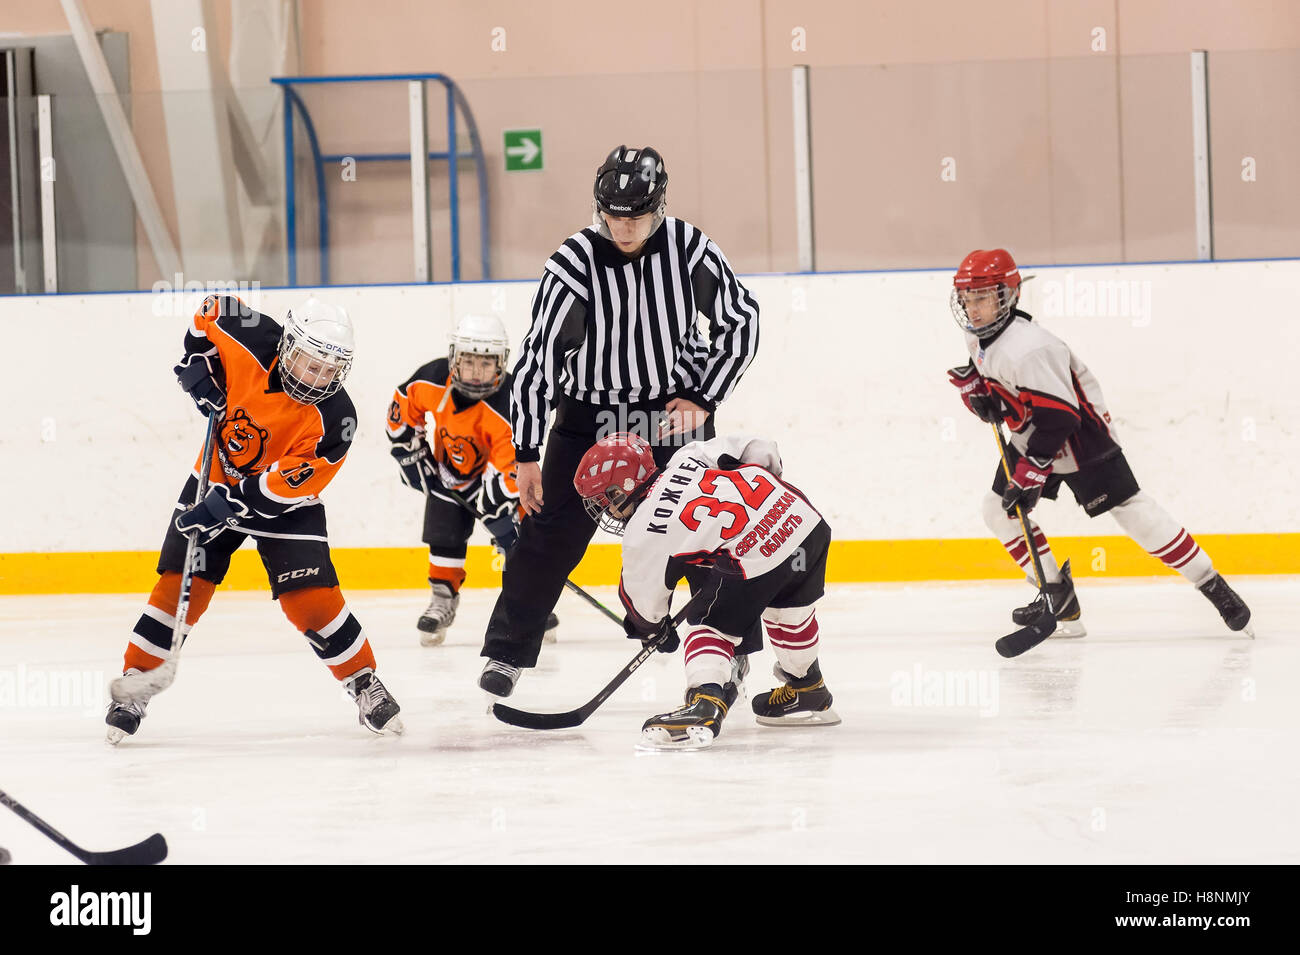 Puck spielen zwischen Spielern des Eishockey teams Stockfoto